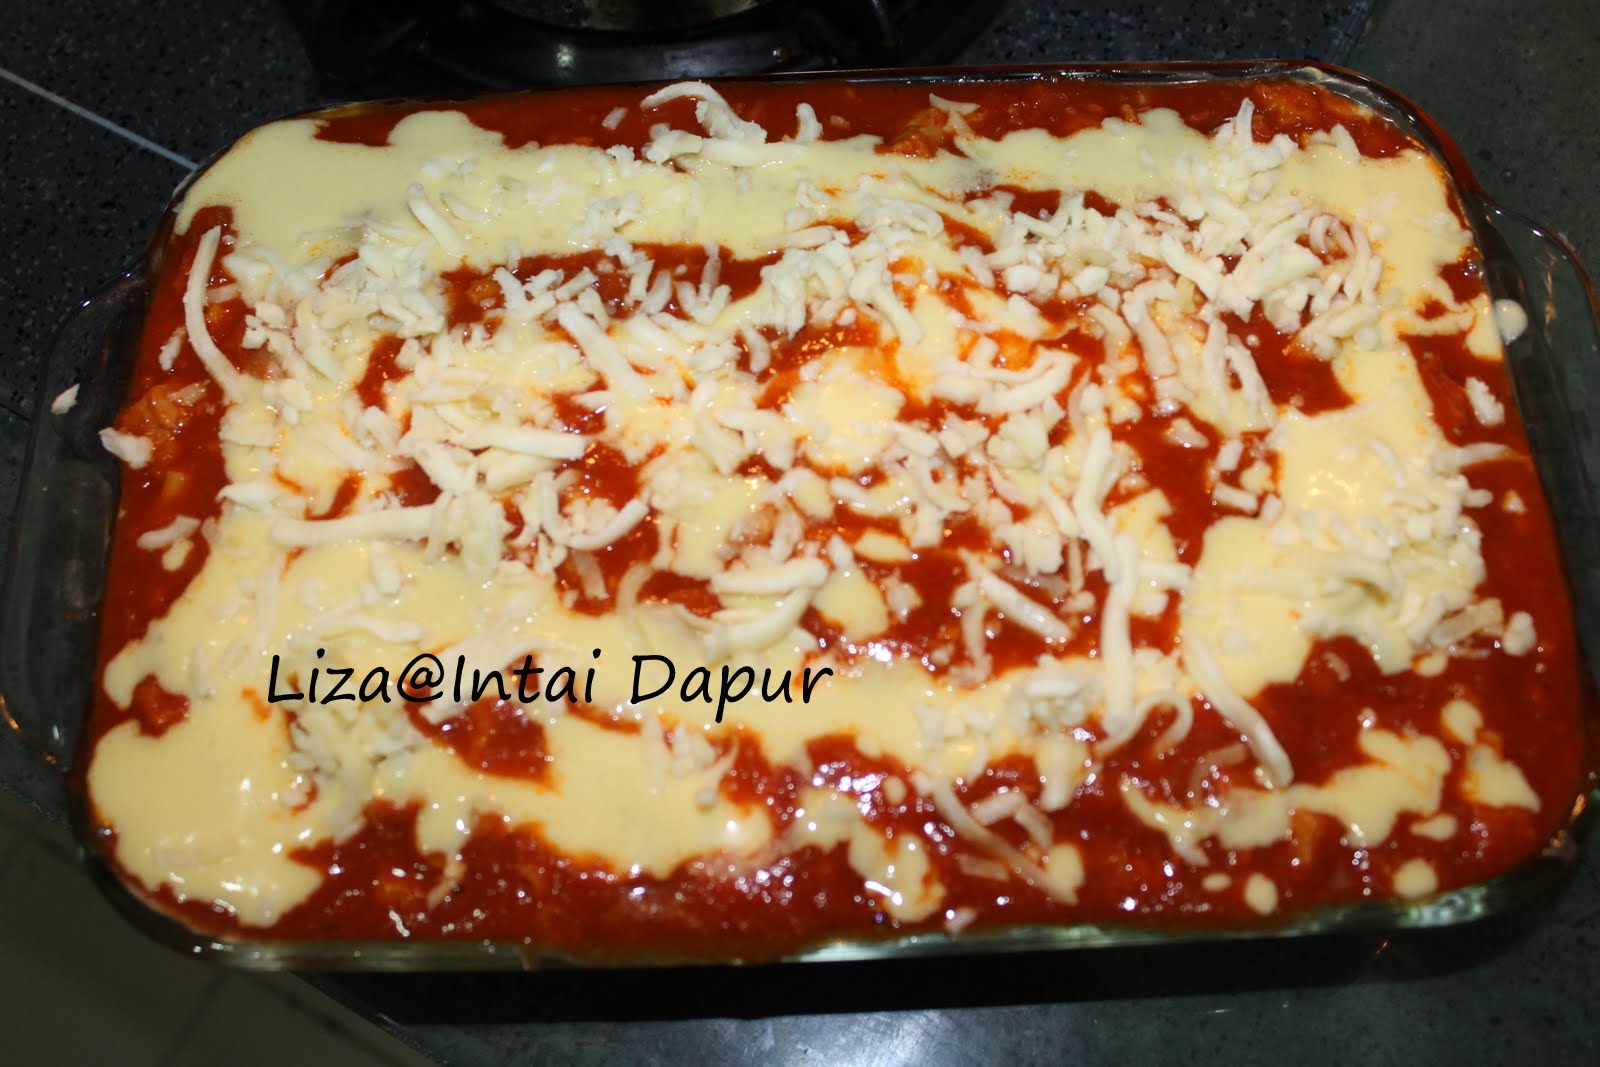 INTAI DAPUR: Baked Macaroni Double Cheese.